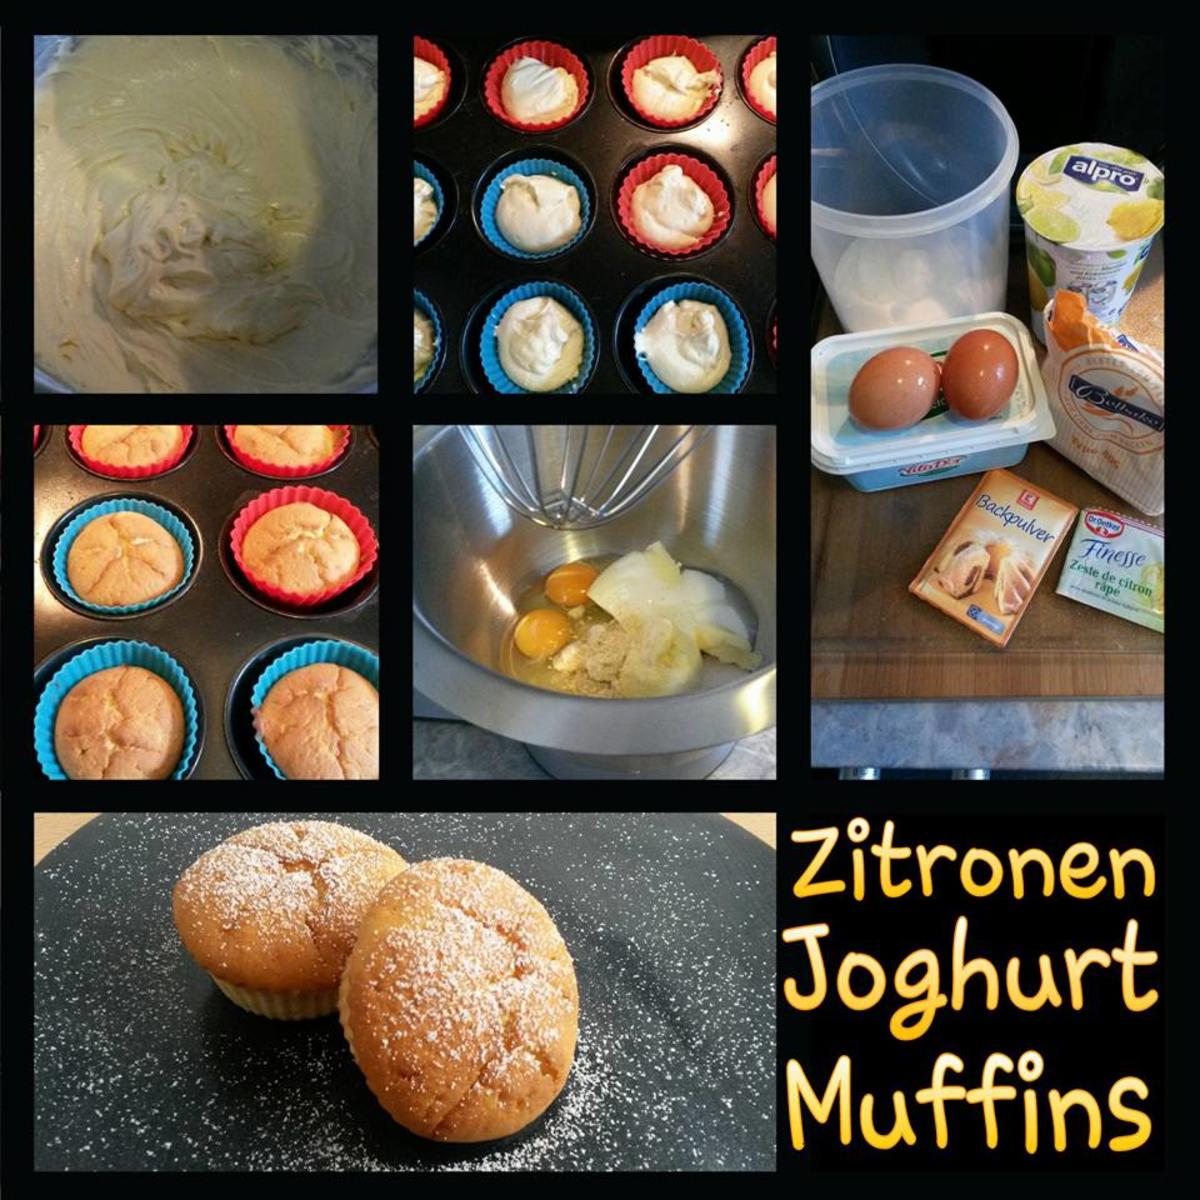 Zitronen Joghurt Muffins - Rezept mit Bild - kochbar.de